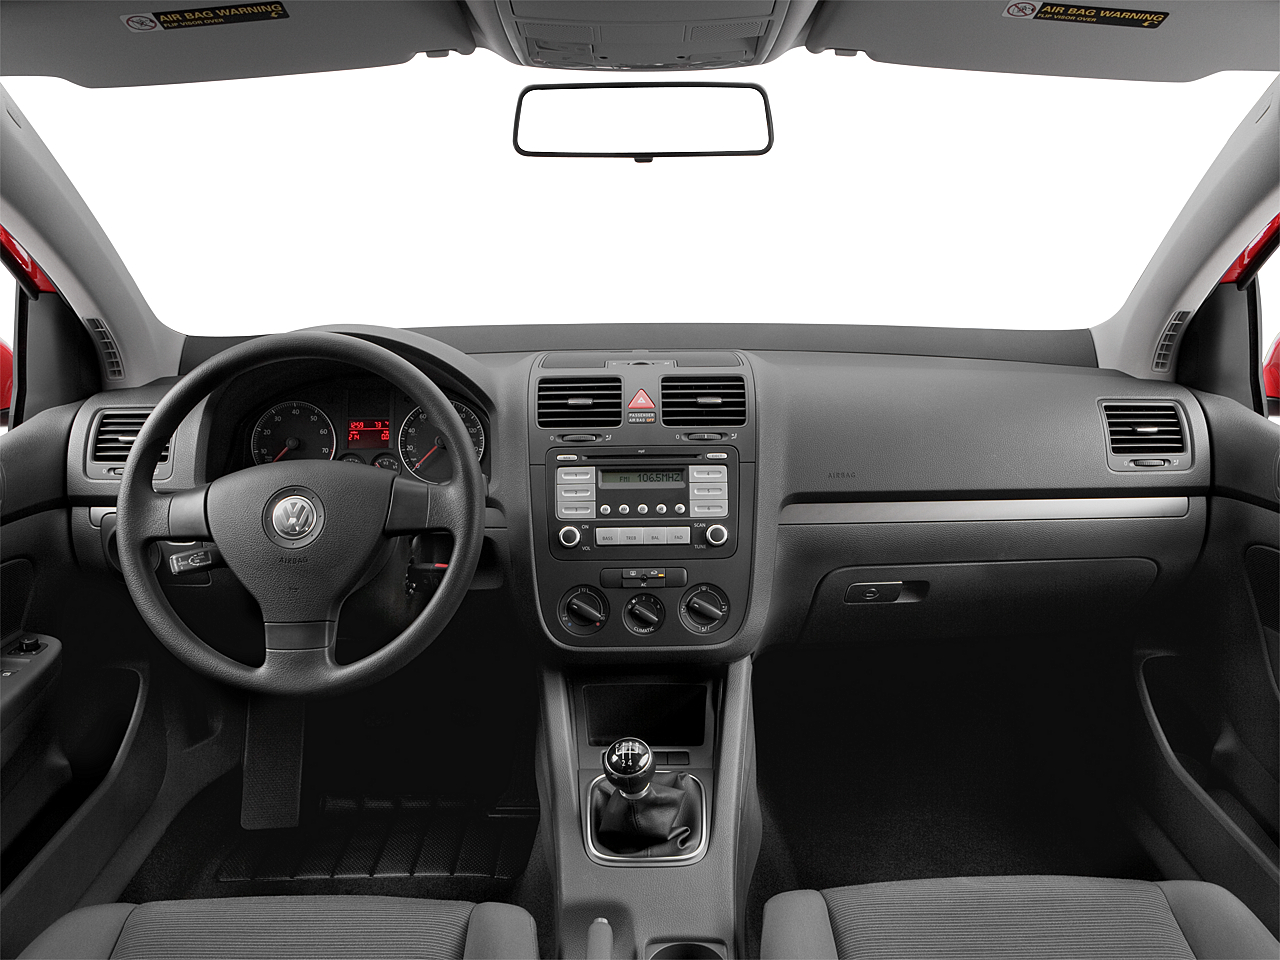 2007 Volkswagen Rabbit 2dr Hatchback (2.5L I5 5M) - Research - GrooveCar